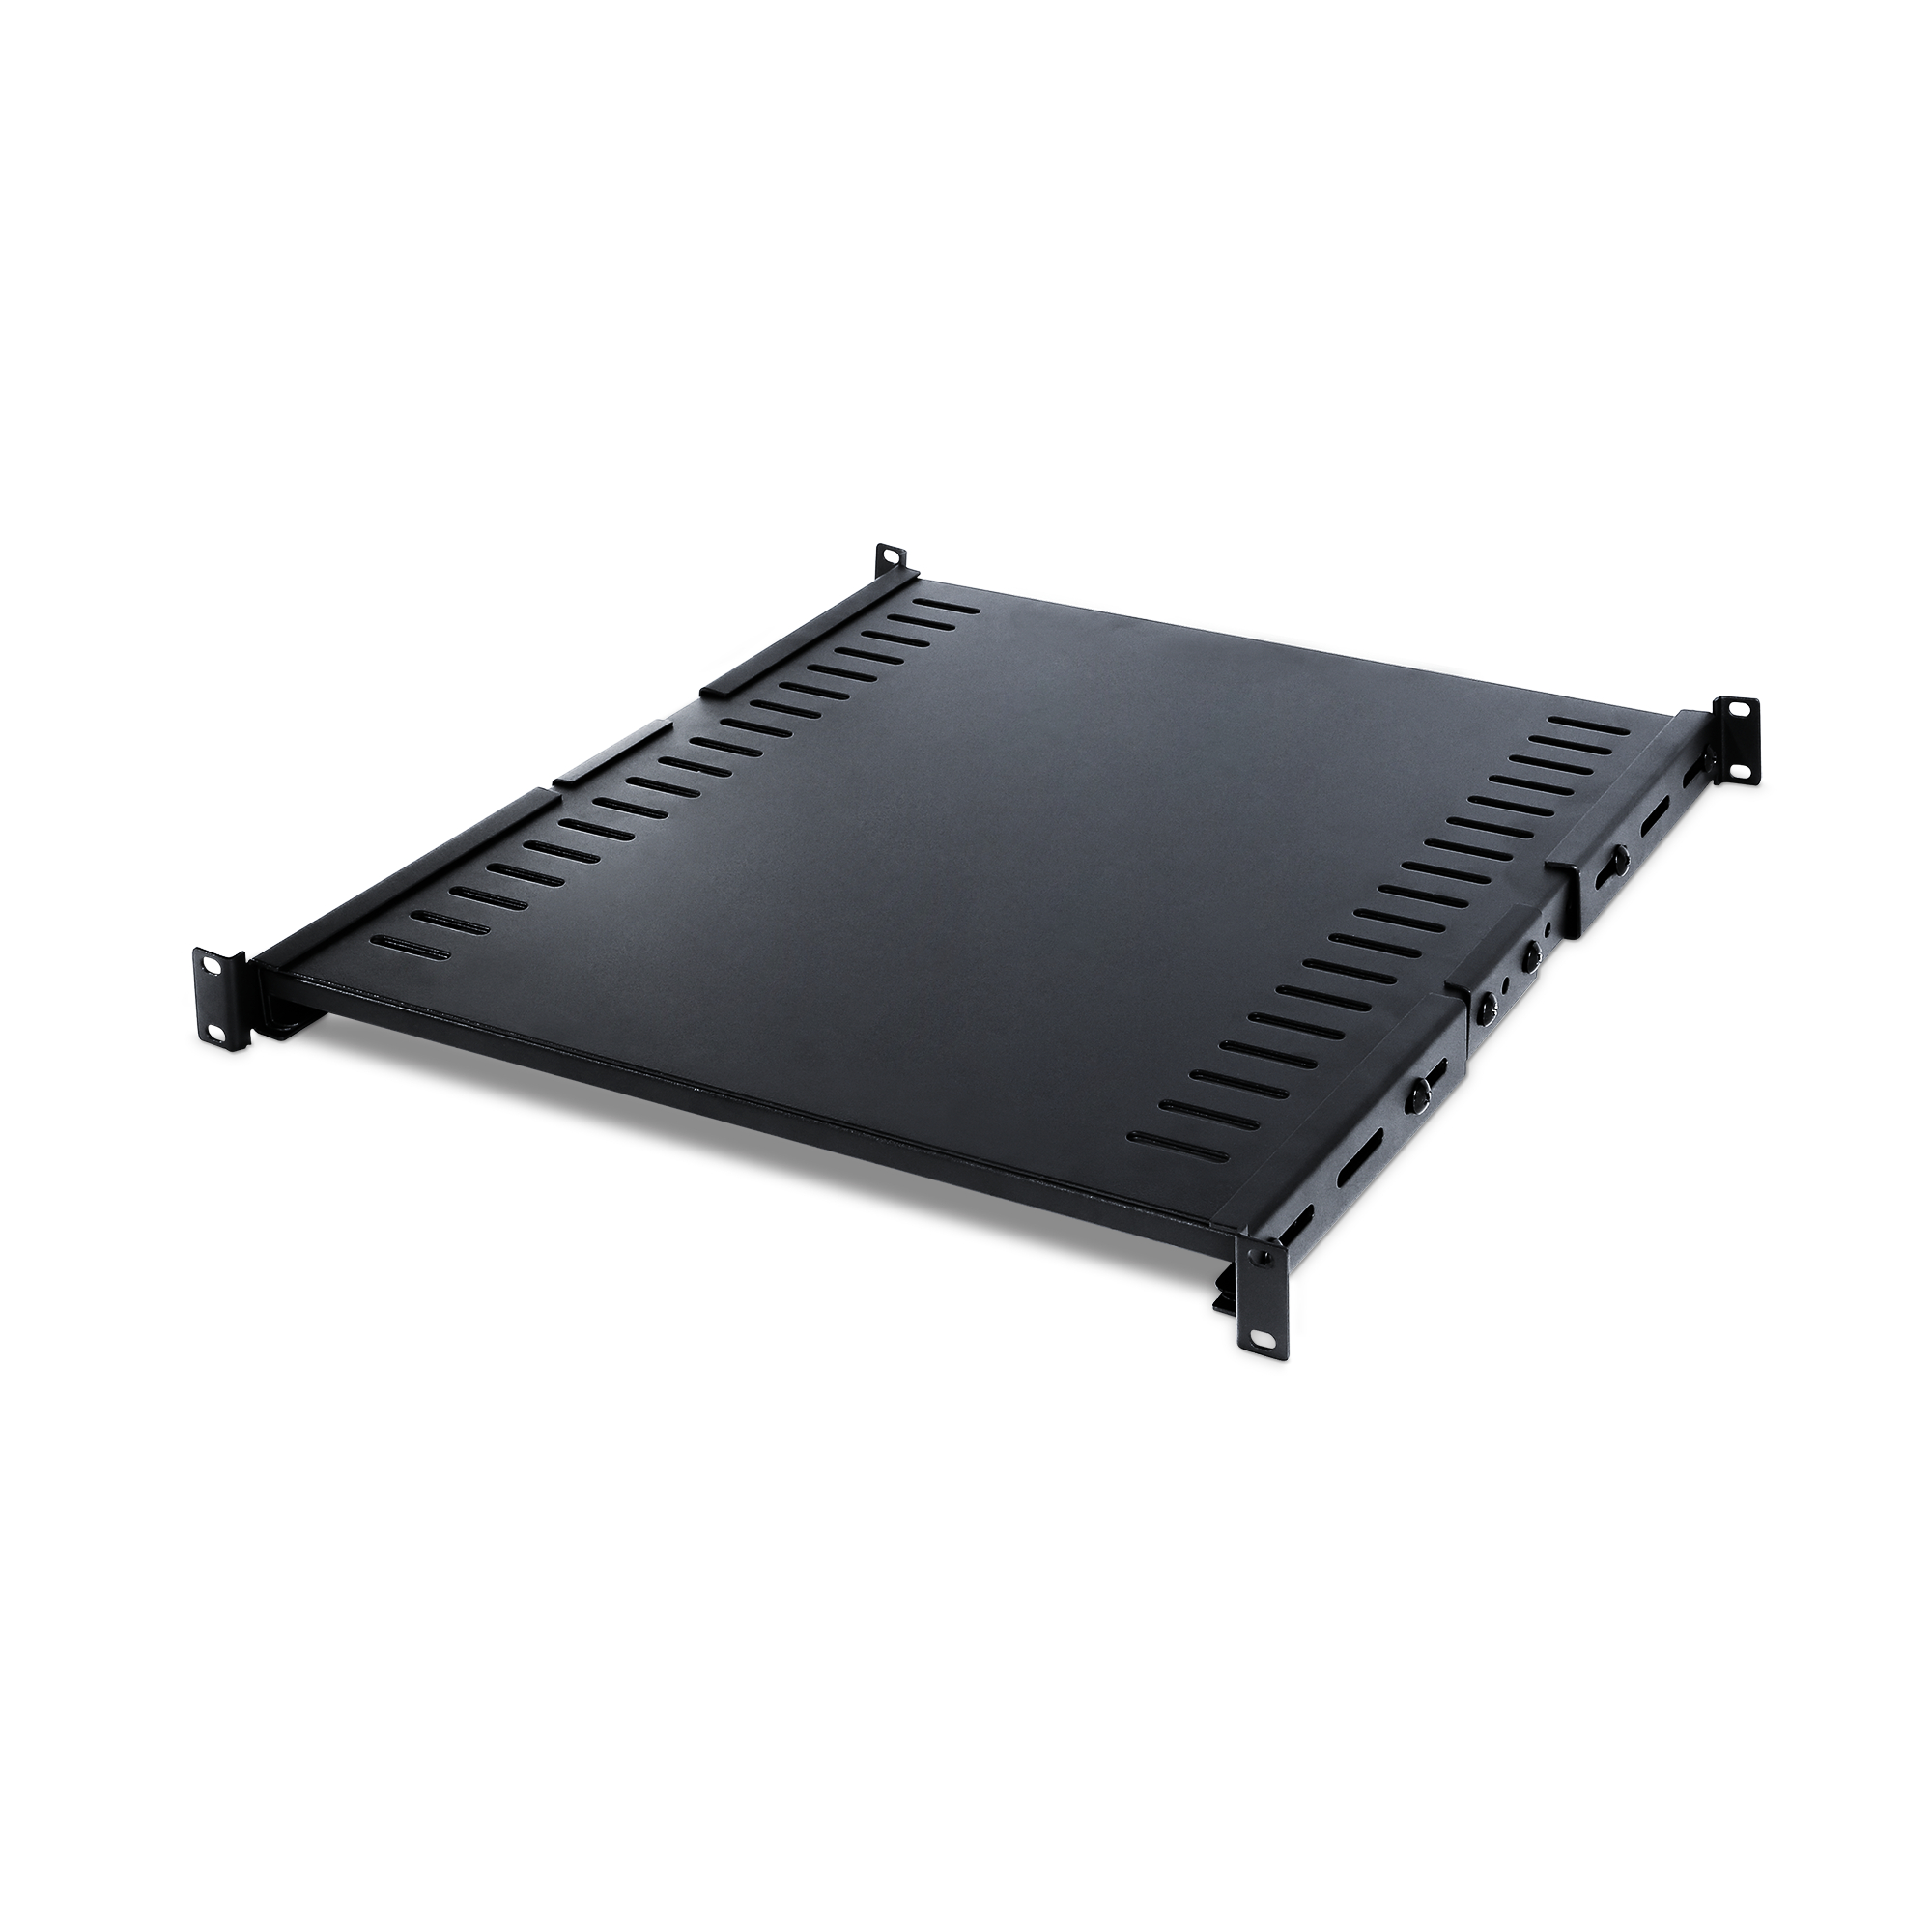 CRA50006 - Carbon Rack Shelves - Product Details, Specs, Downloads ...